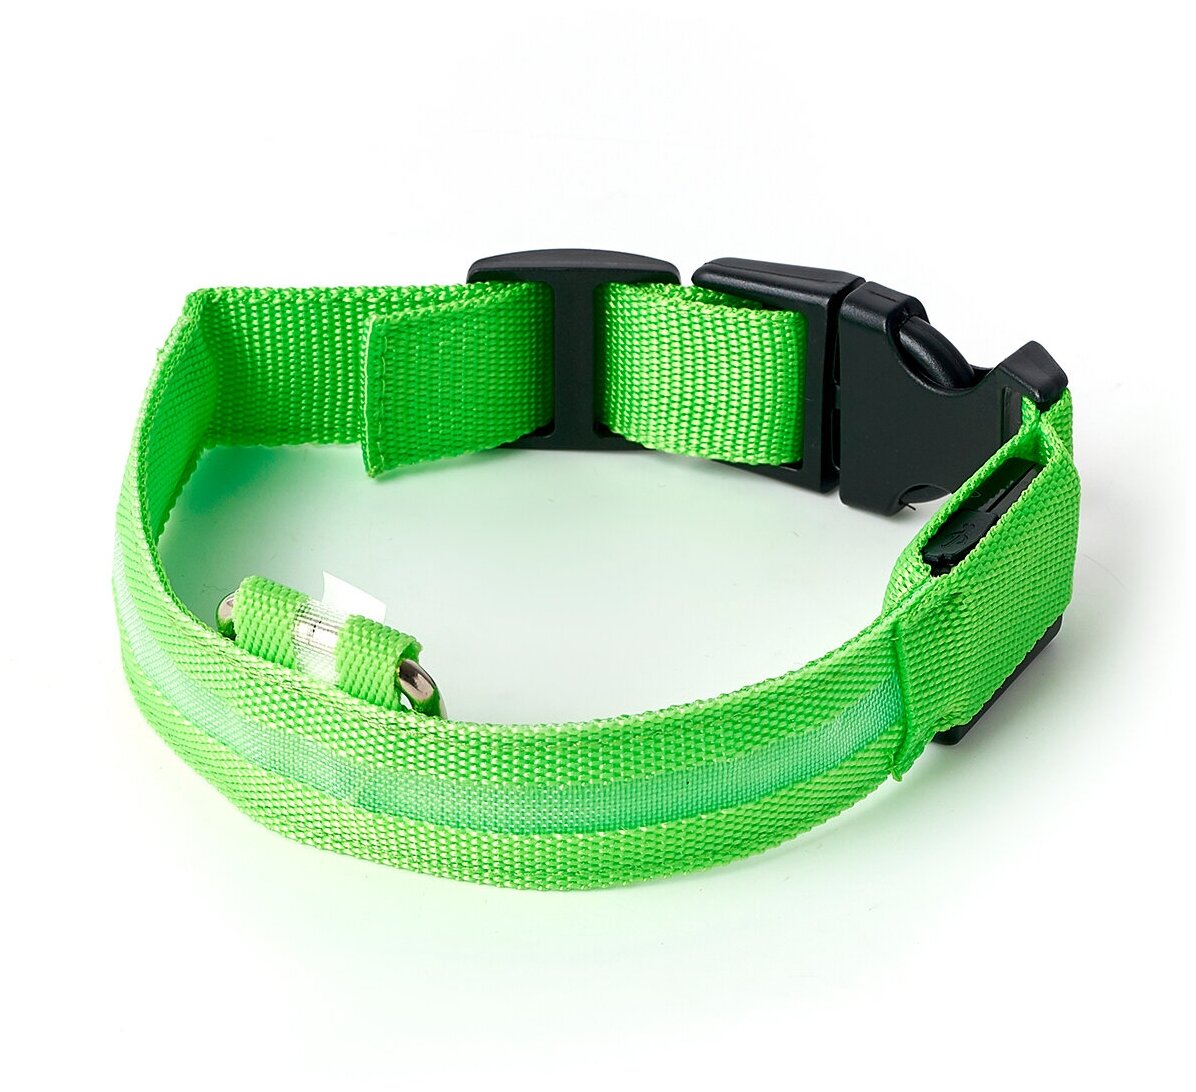 Ошейник светящийся светодиодный для собак, usb зарядка в комплекте, цвет: зеленый, M